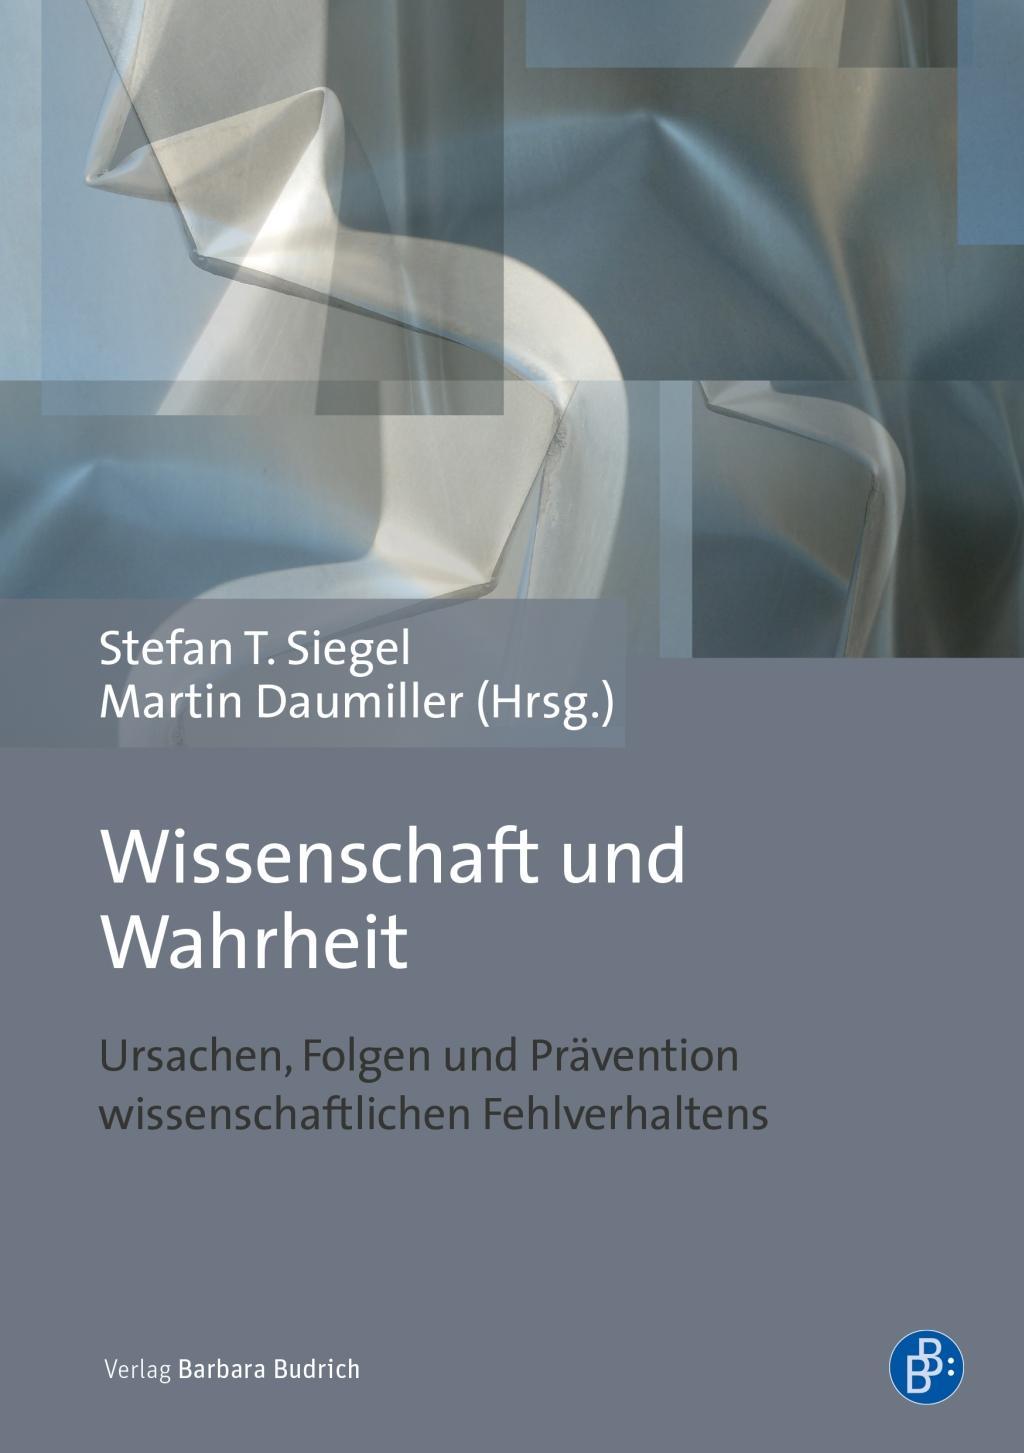 Carte Wissenschaft und Wahrheit Martin Daumiller